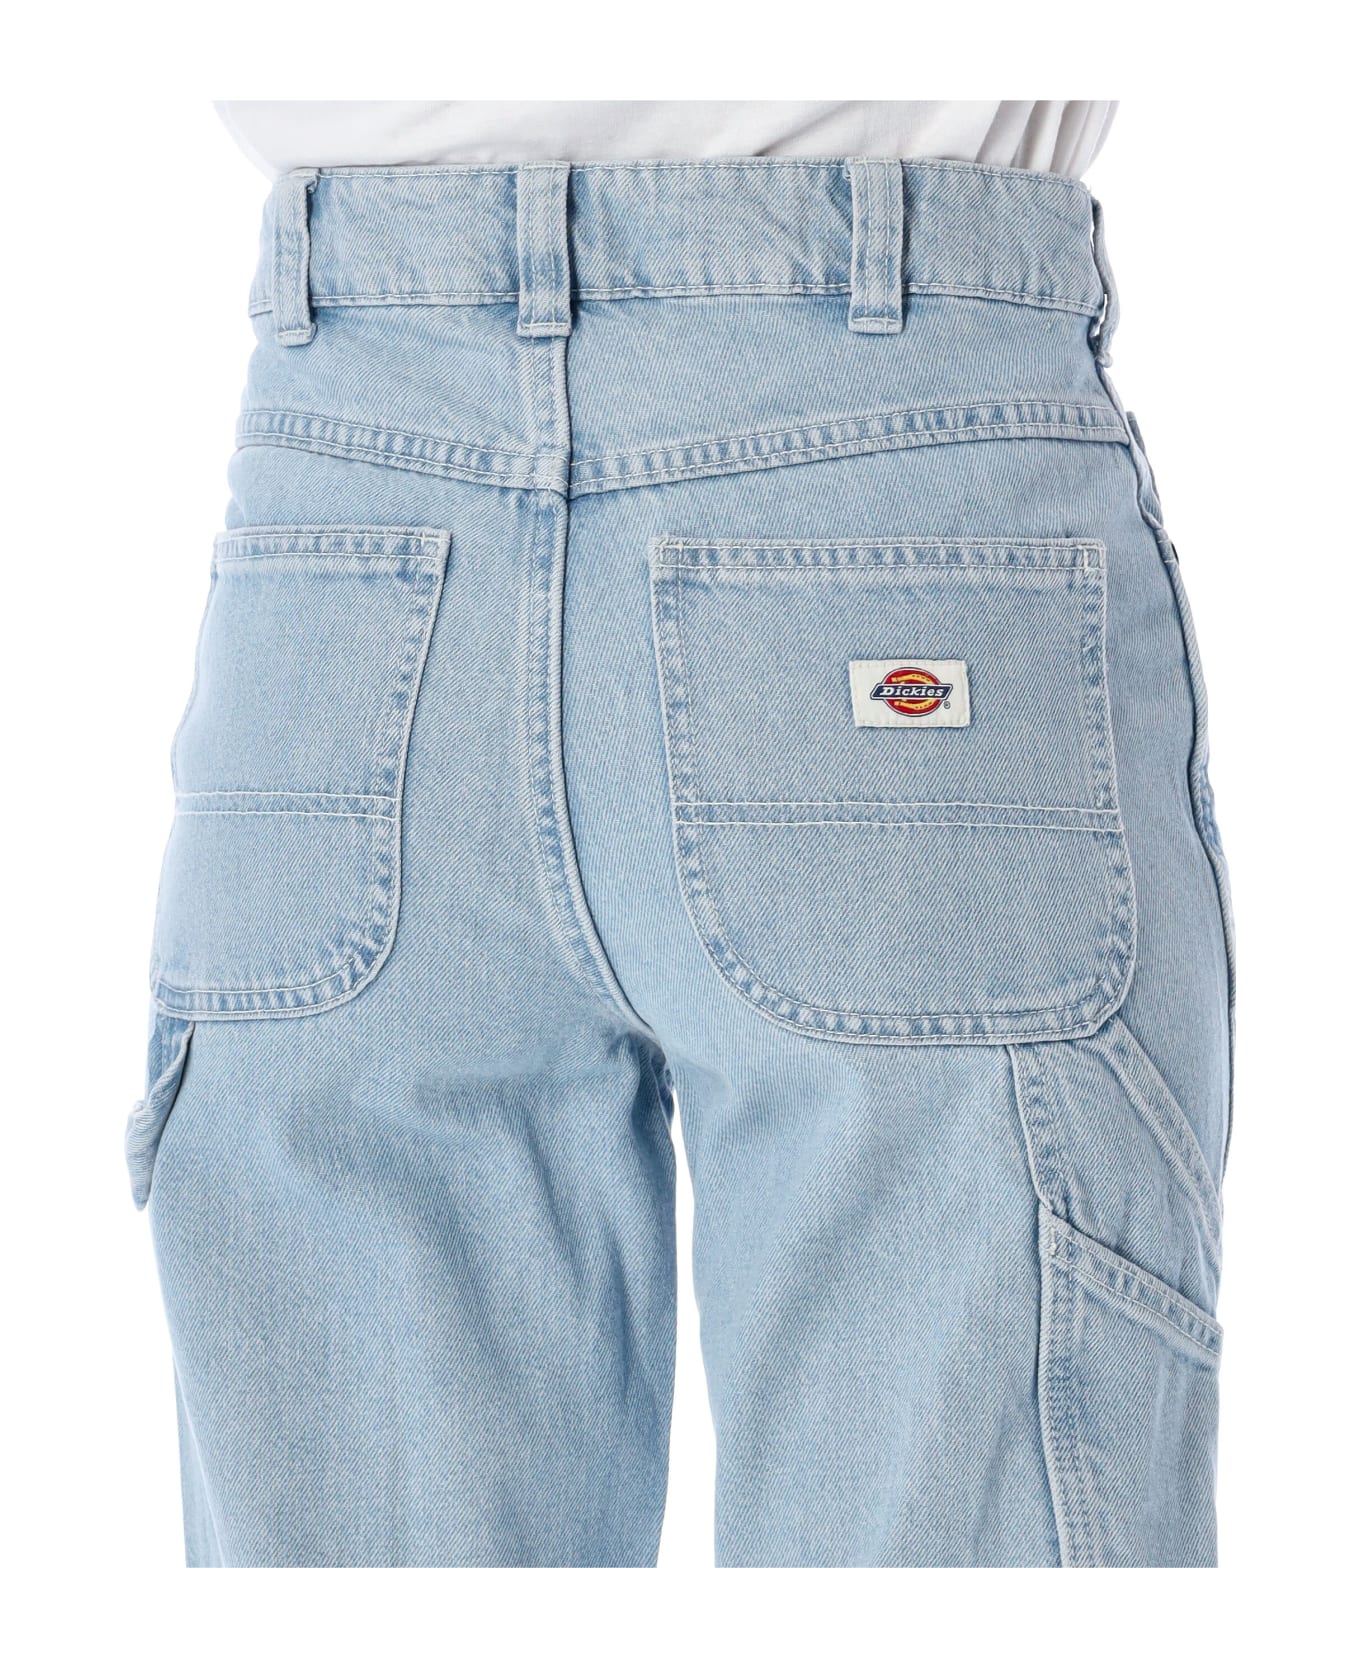 Dickies Ellendale Denim Jeans - VINTAGE AGED BLUE デニム